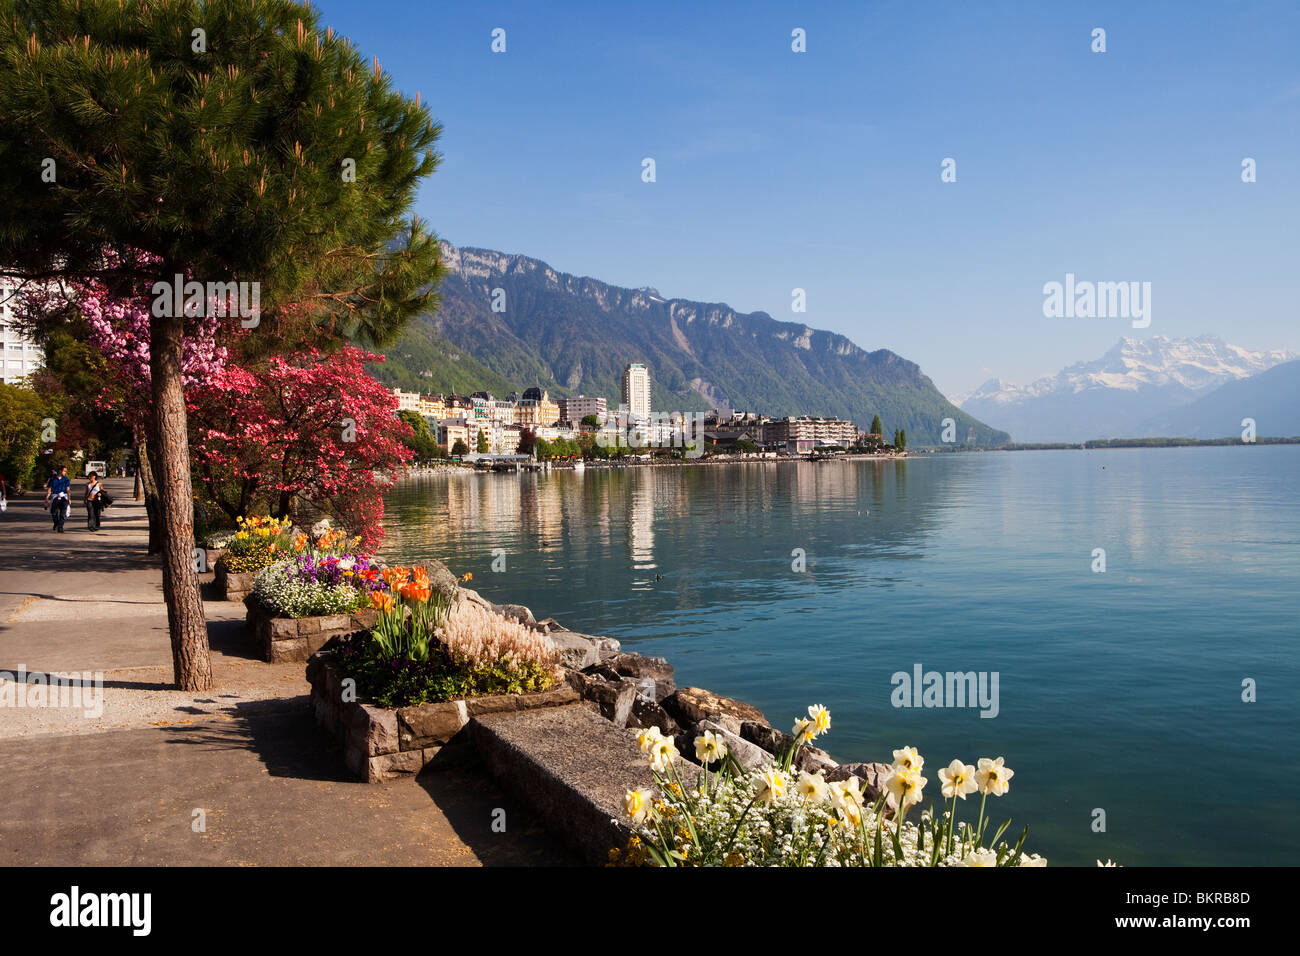 Montreux, Switzerland Stock Photo